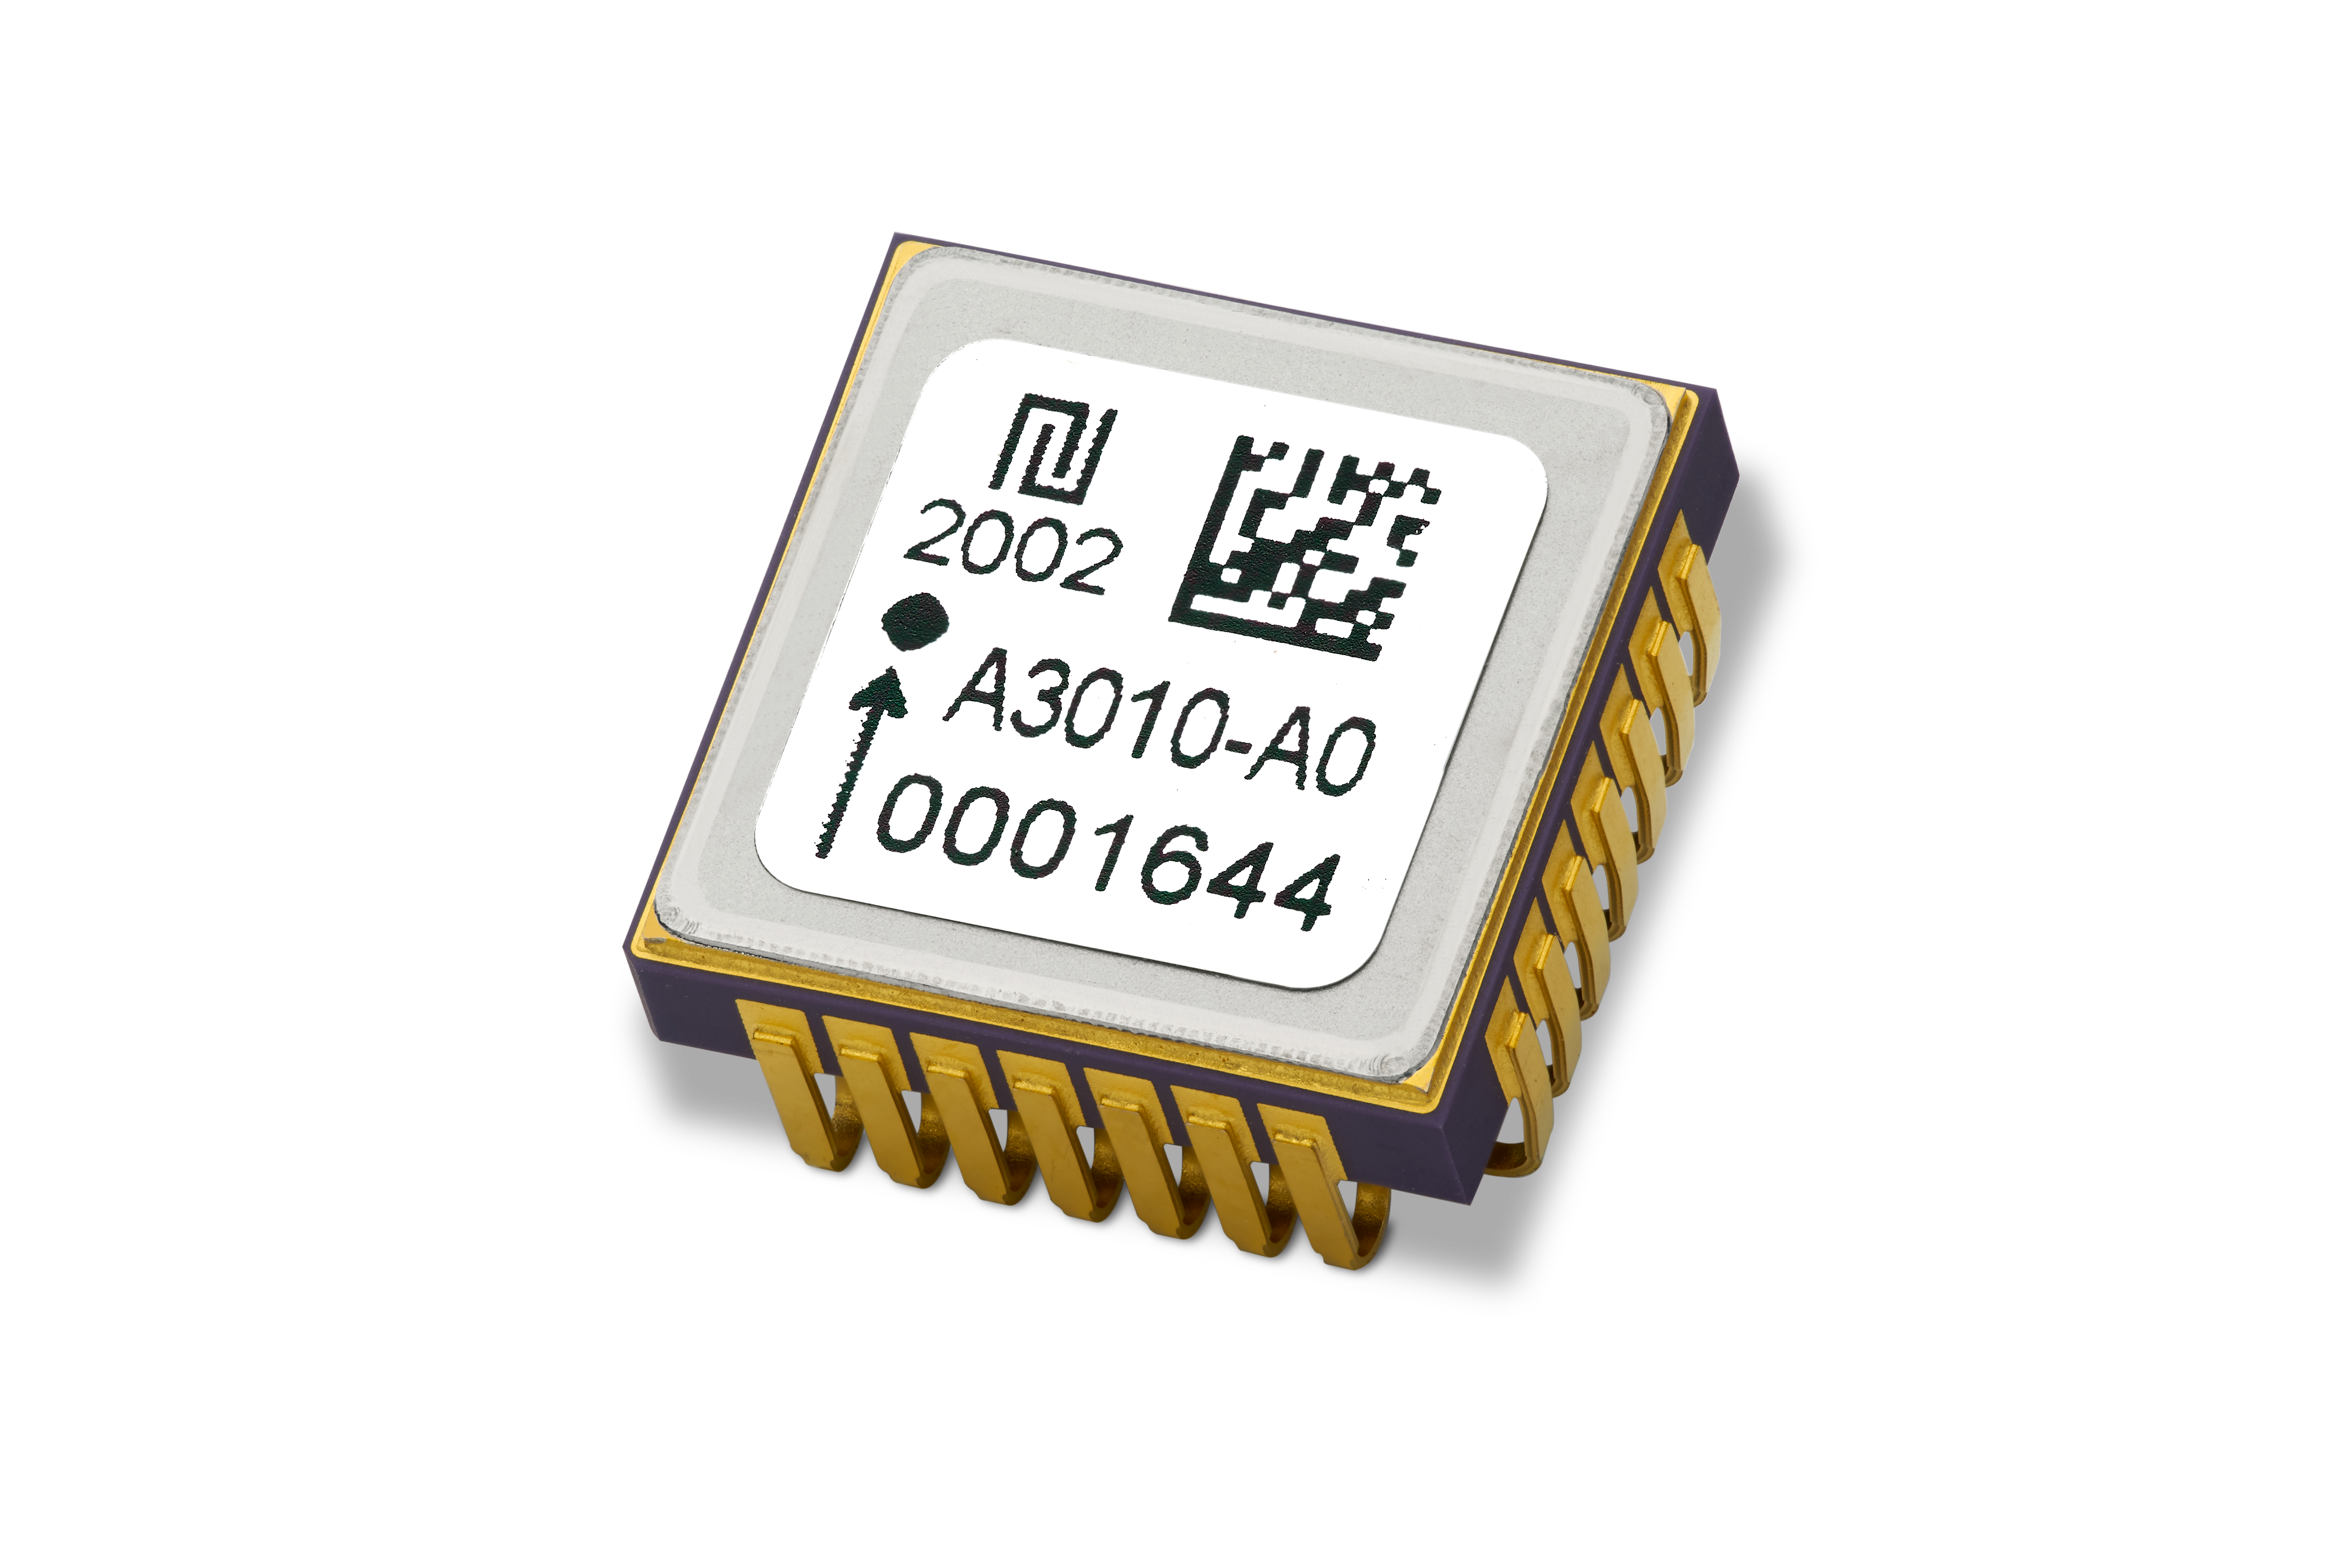 AXO301 high resolution MEMS accelerometer